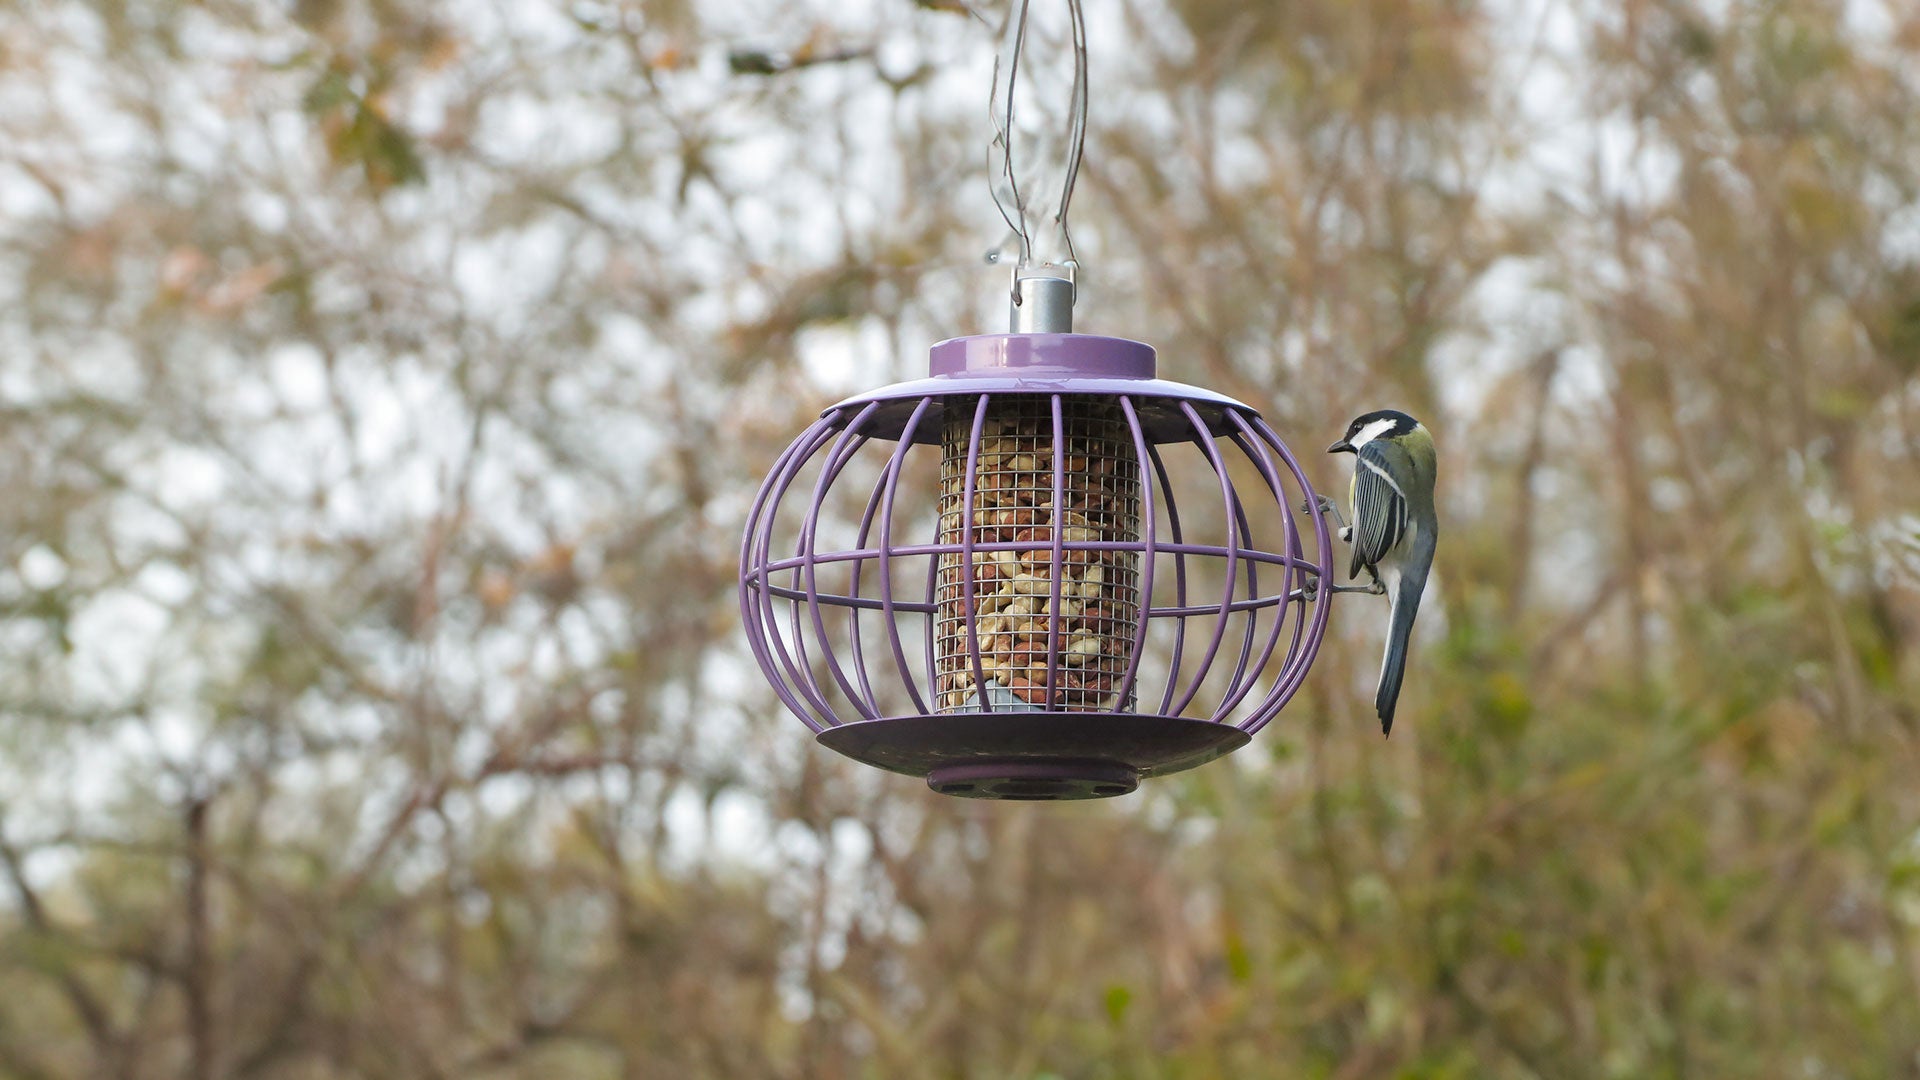 Blue tit on a purple caged bird feeder